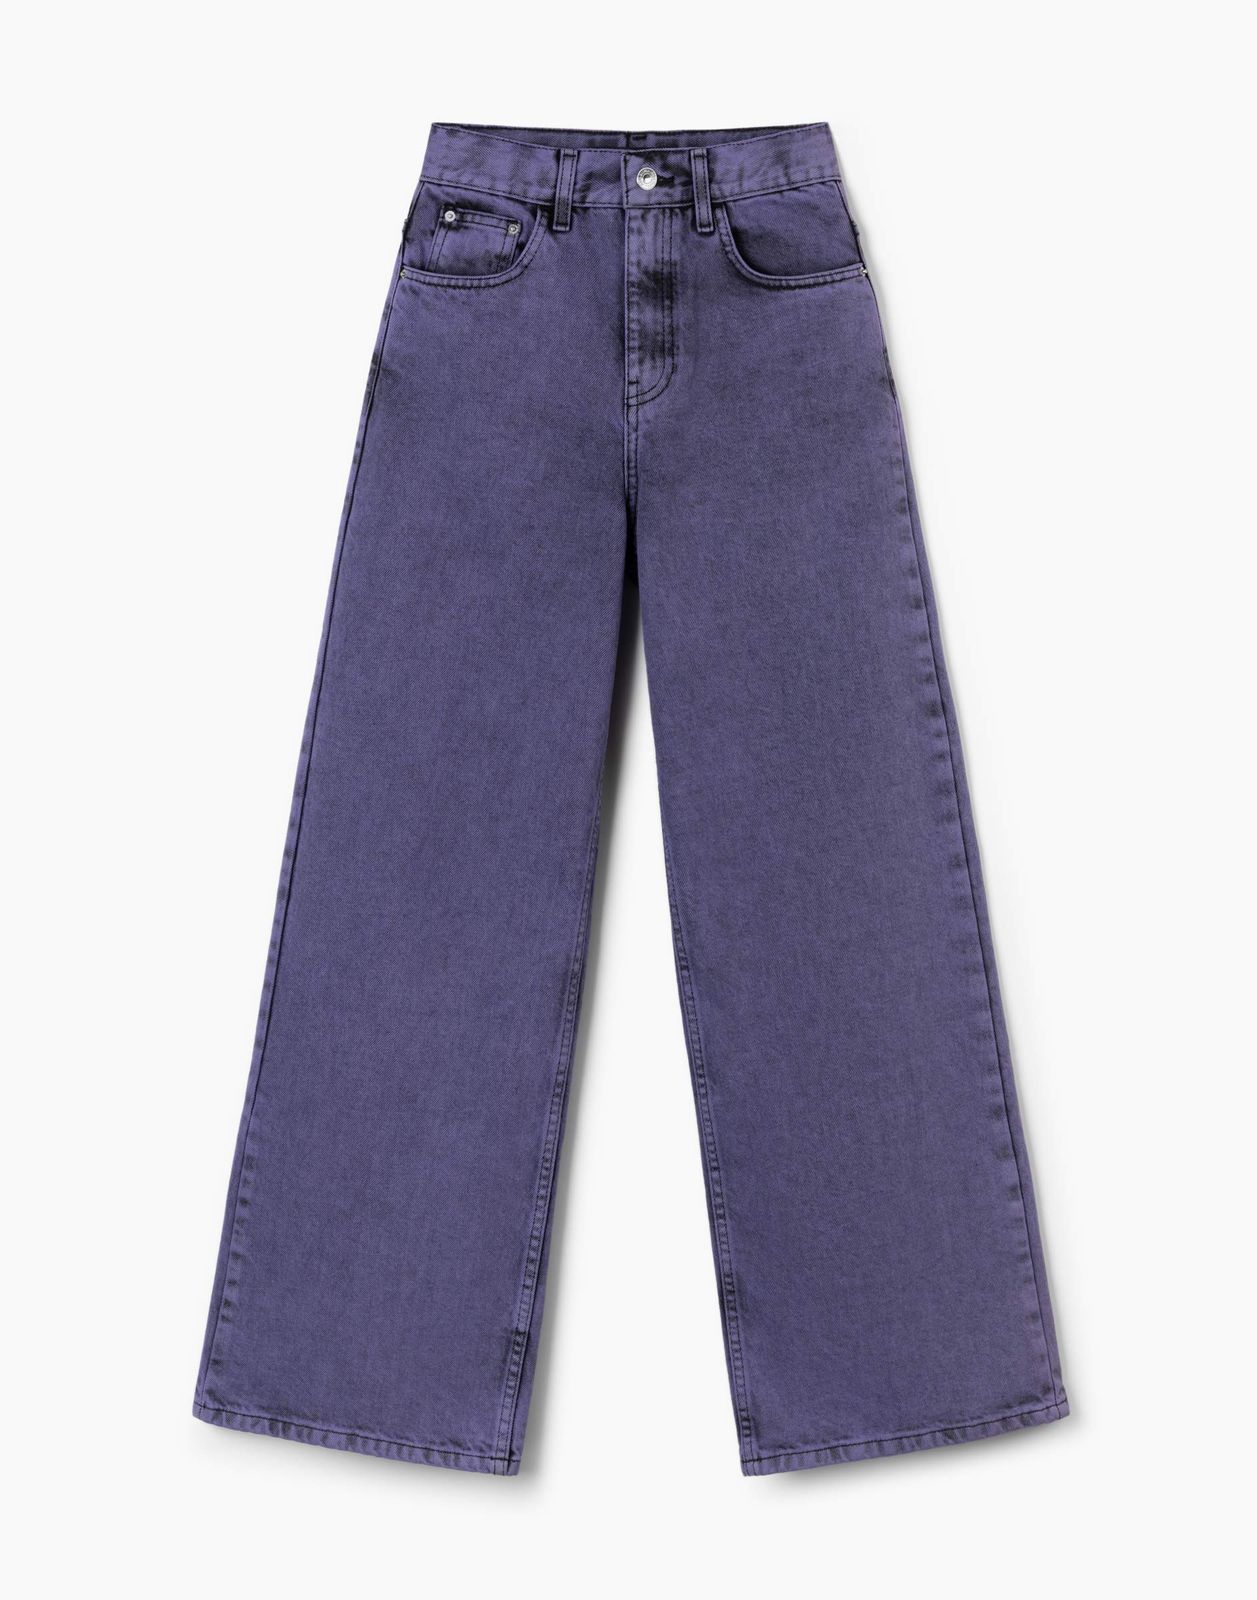 Джинсы детские Gloria Jeans GJN031150, черный/фиолетовый, 146